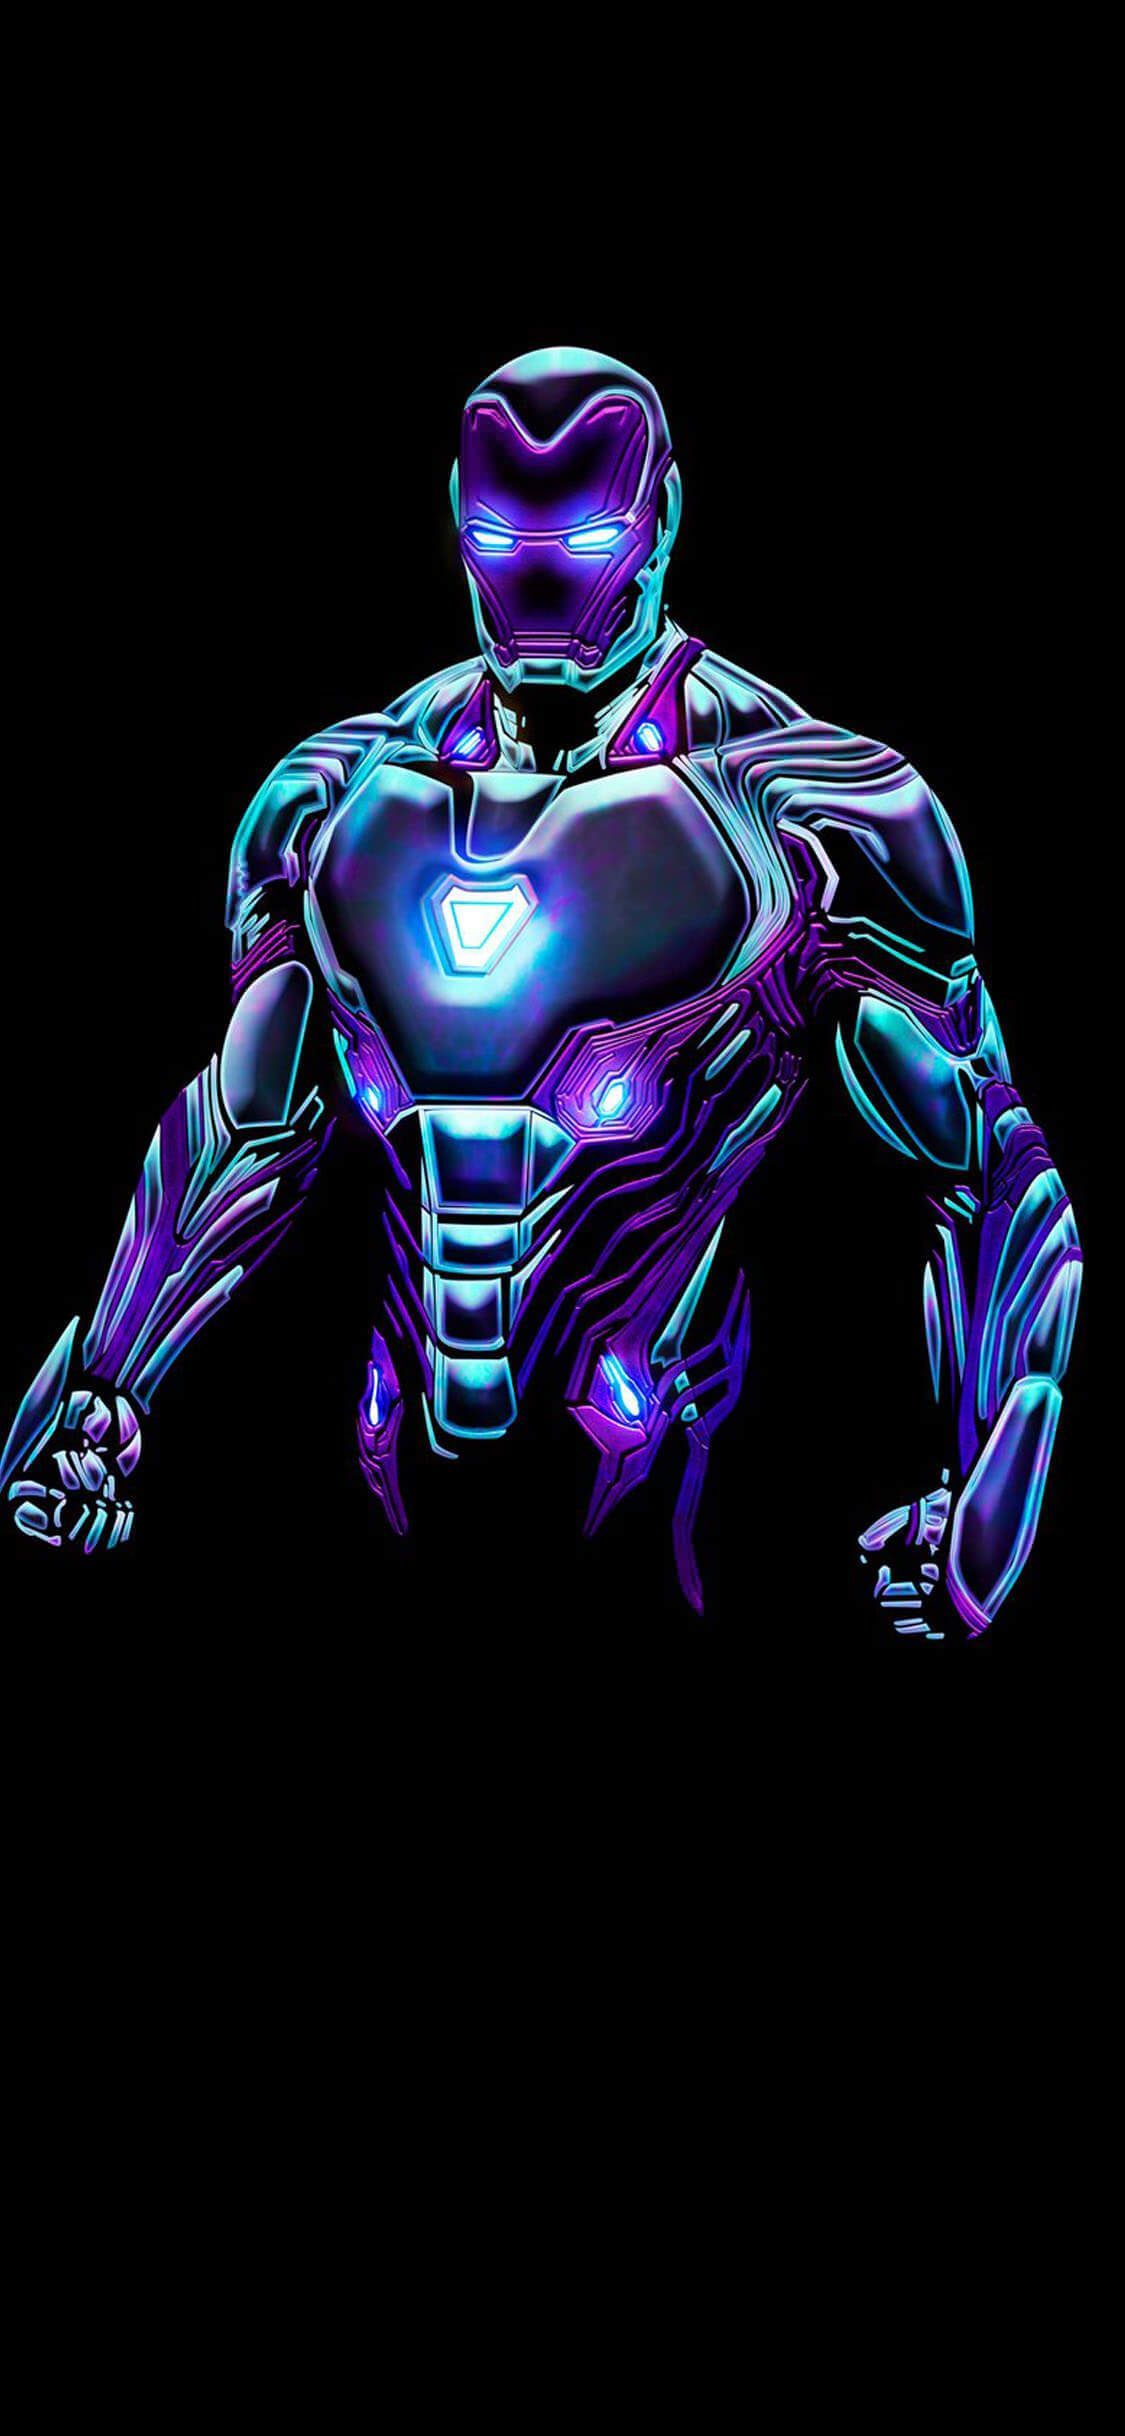 Best Iron Man iPhone Wallpaper